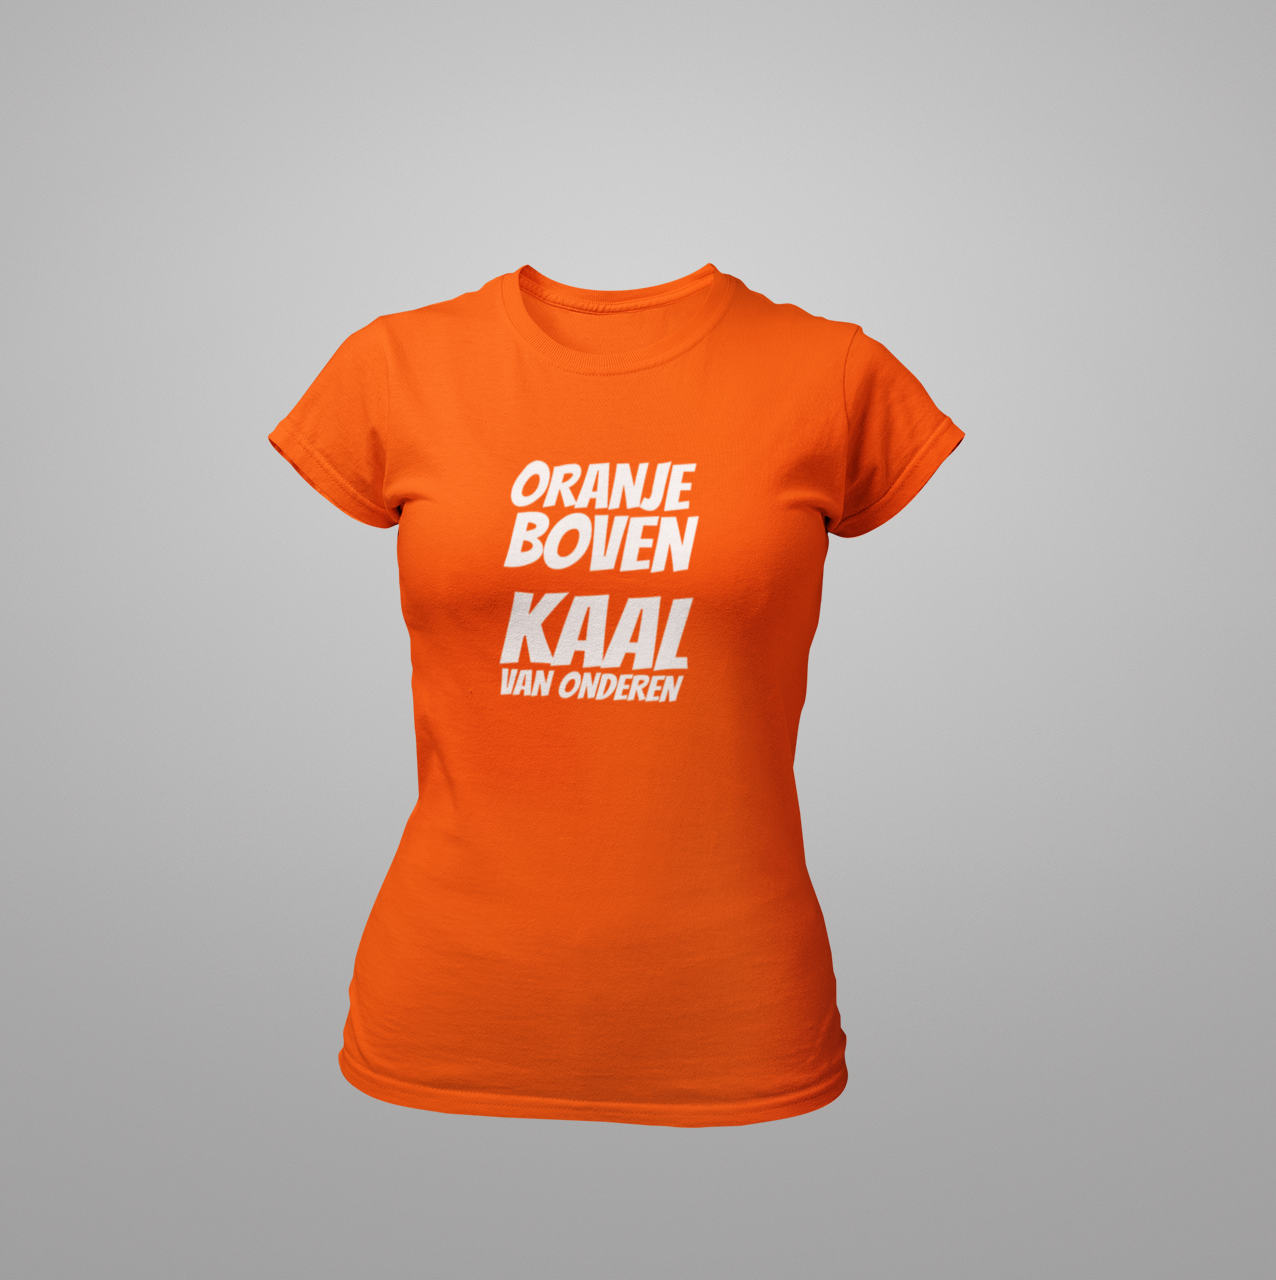 Kostuums wildernis Zuinig T-Shirt - Oranje boven, kaal van onderen - Go-Outfit.nl - de leukste  themakleding